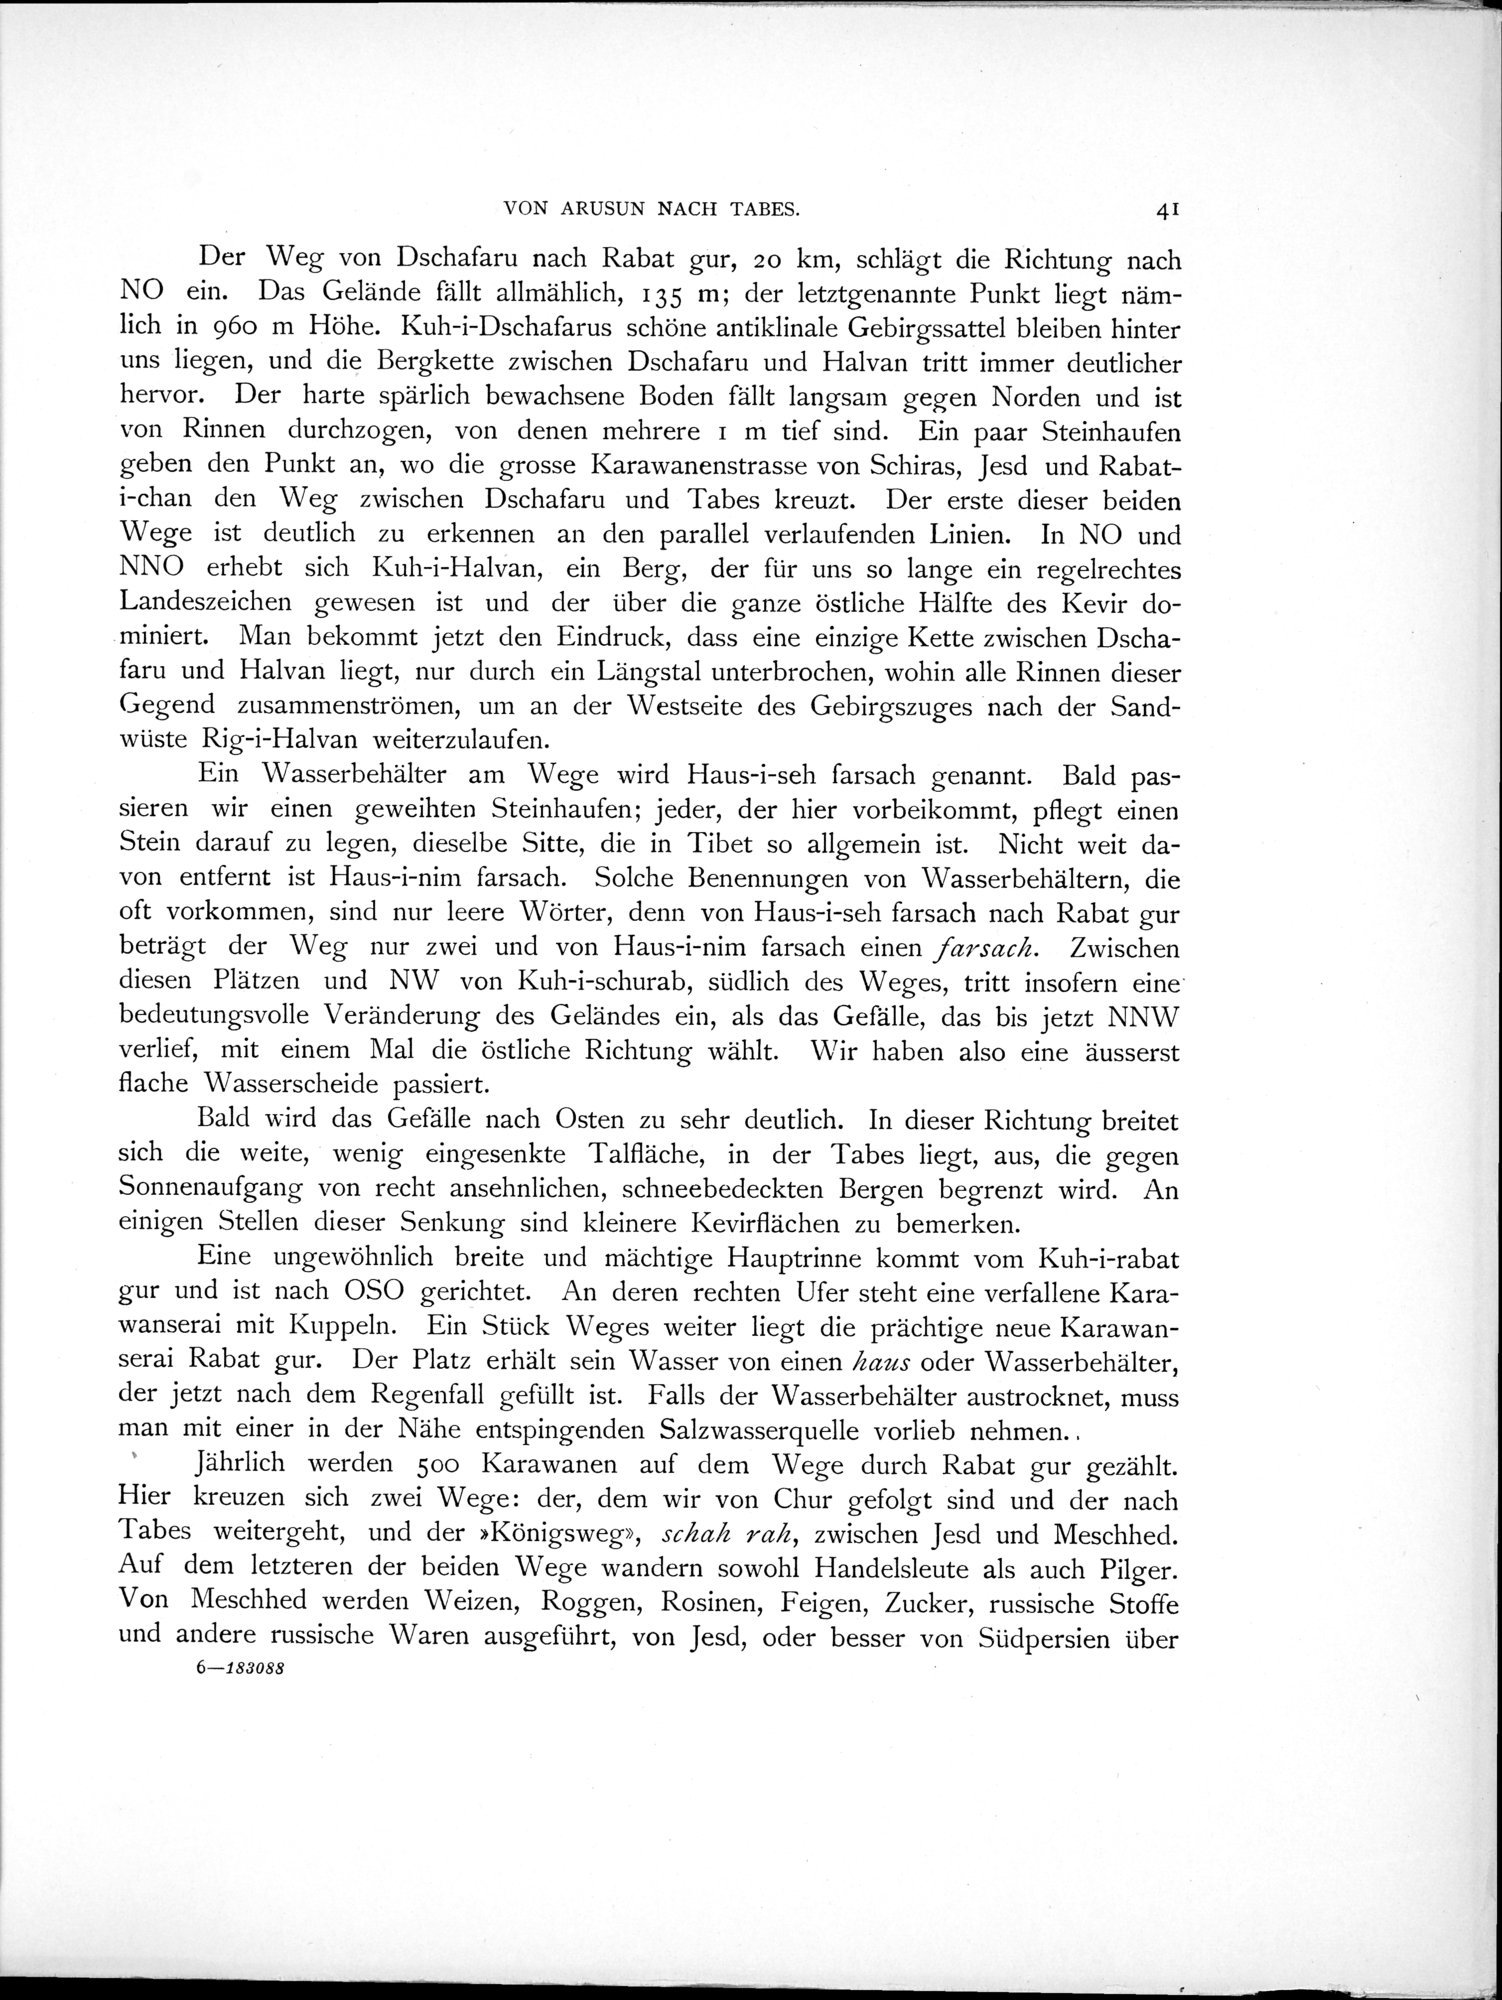 Eine Routenaufnahme durch Ostpersien : vol.1 / Page 119 (Grayscale High Resolution Image)